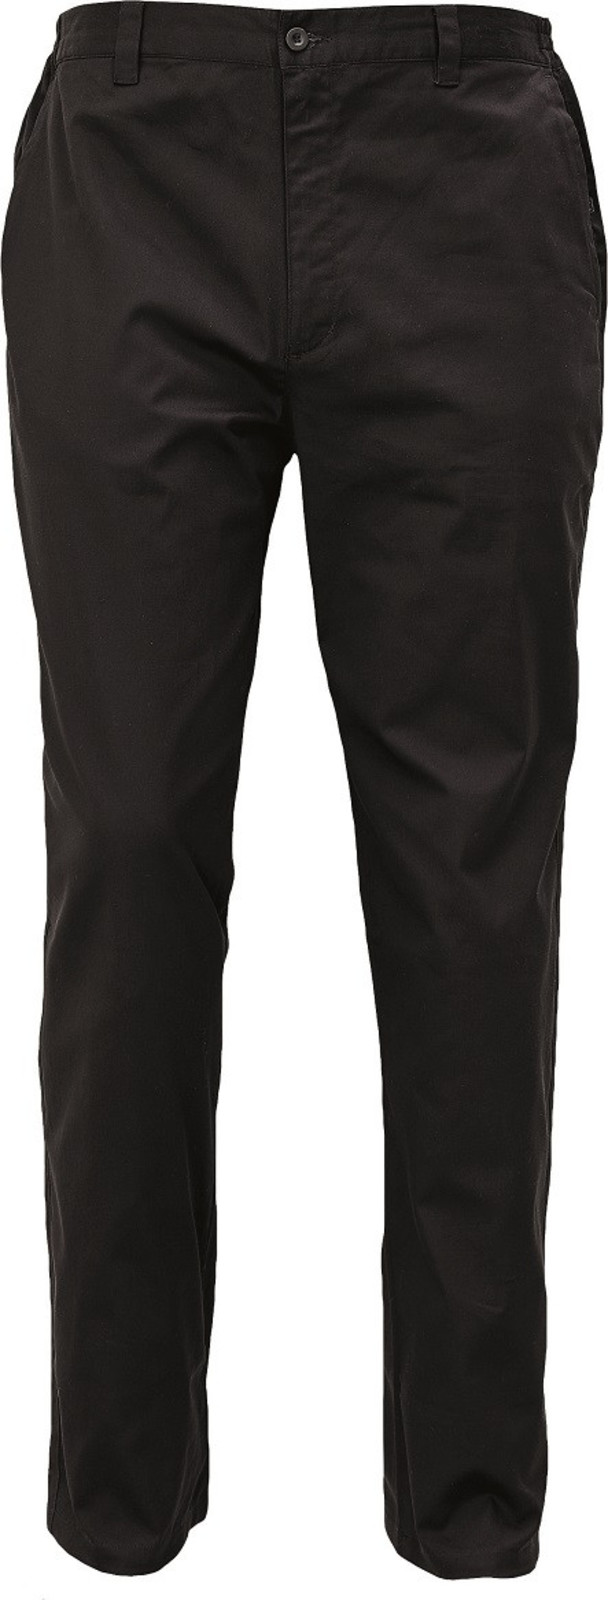 Voľnočasové nohavice Lagan pánske - veľkosť: 60, farba: čierna